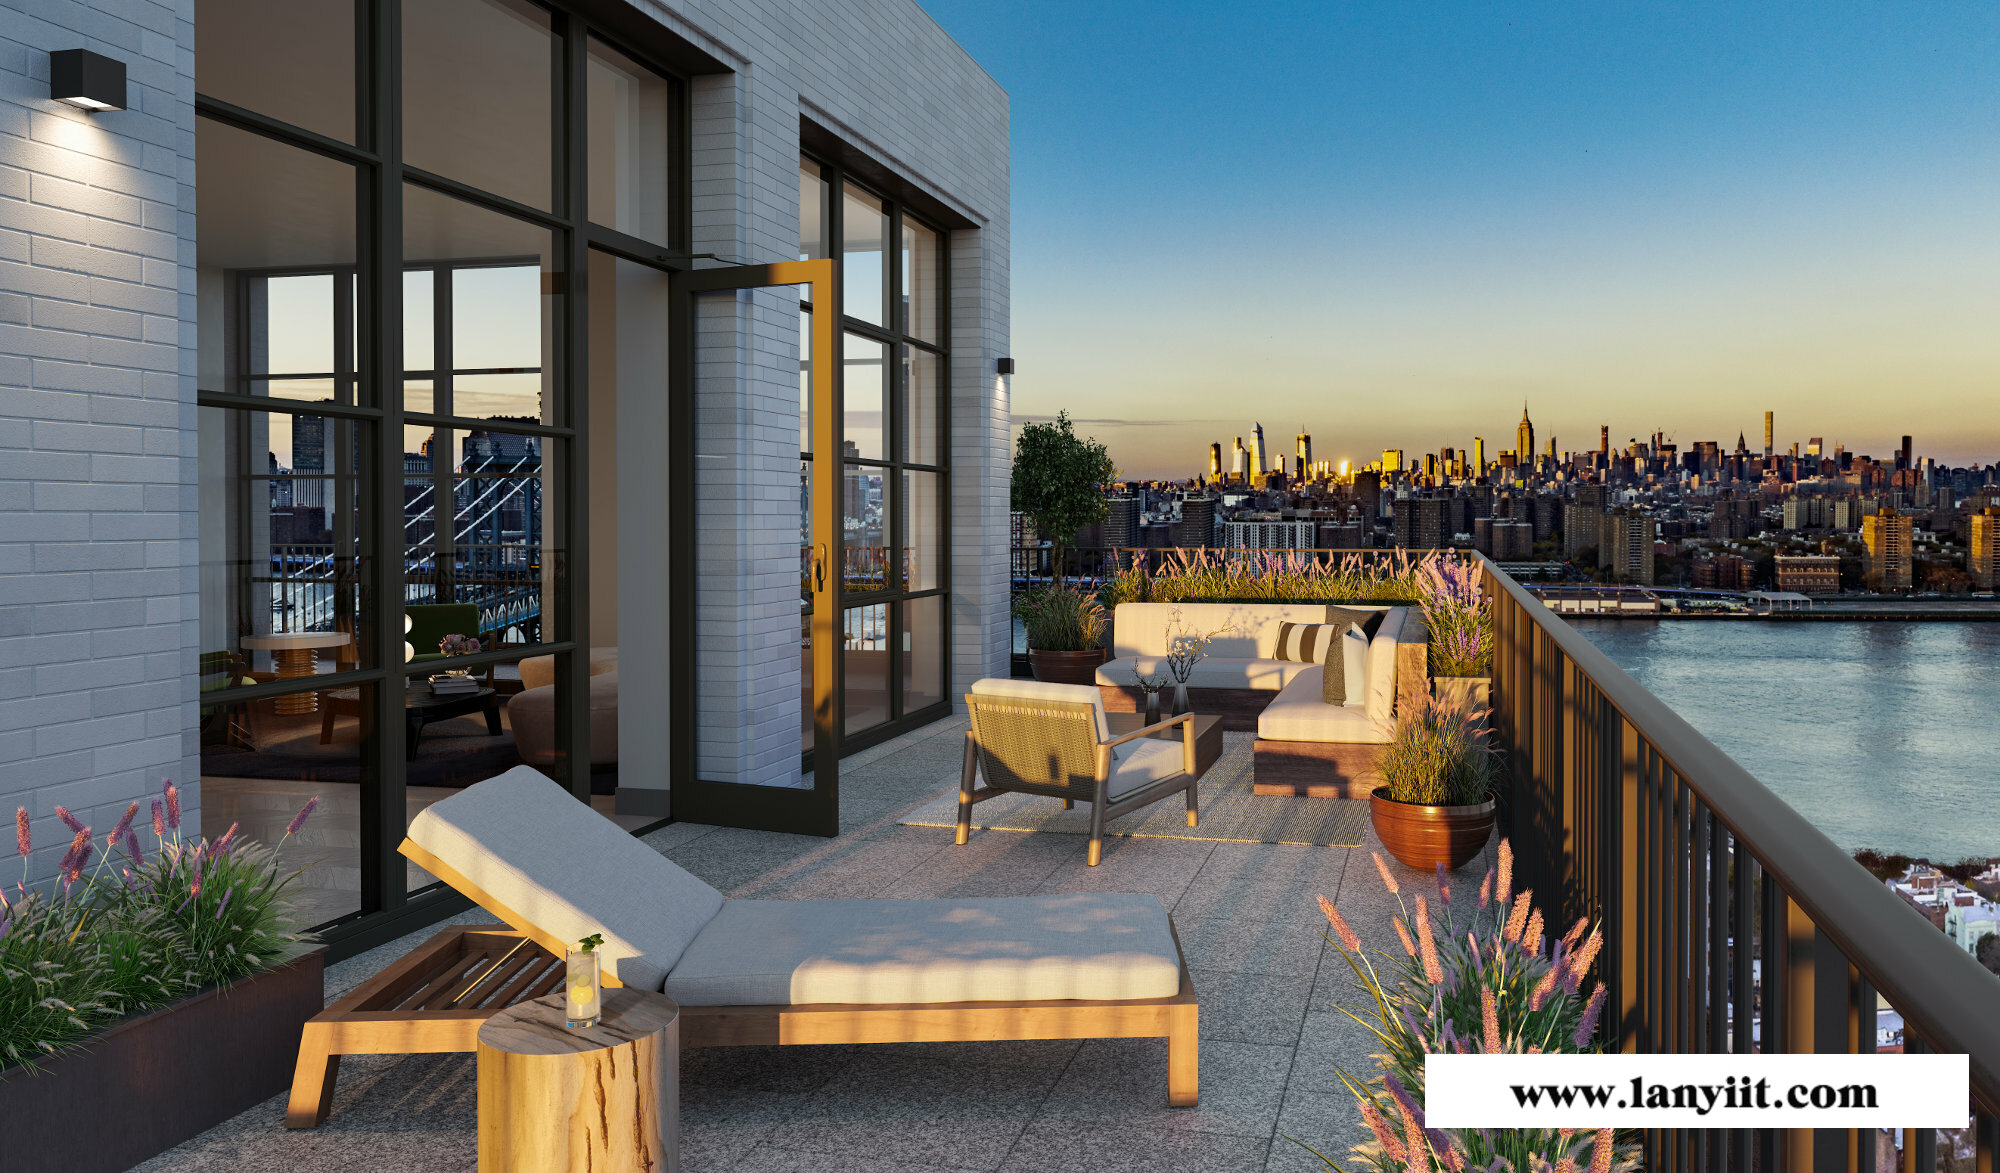 纽约极具潜力楼盘推荐:DUMBO社区豪华水景公寓 布鲁克林大桥公园畔的高端时尚生活(图44)